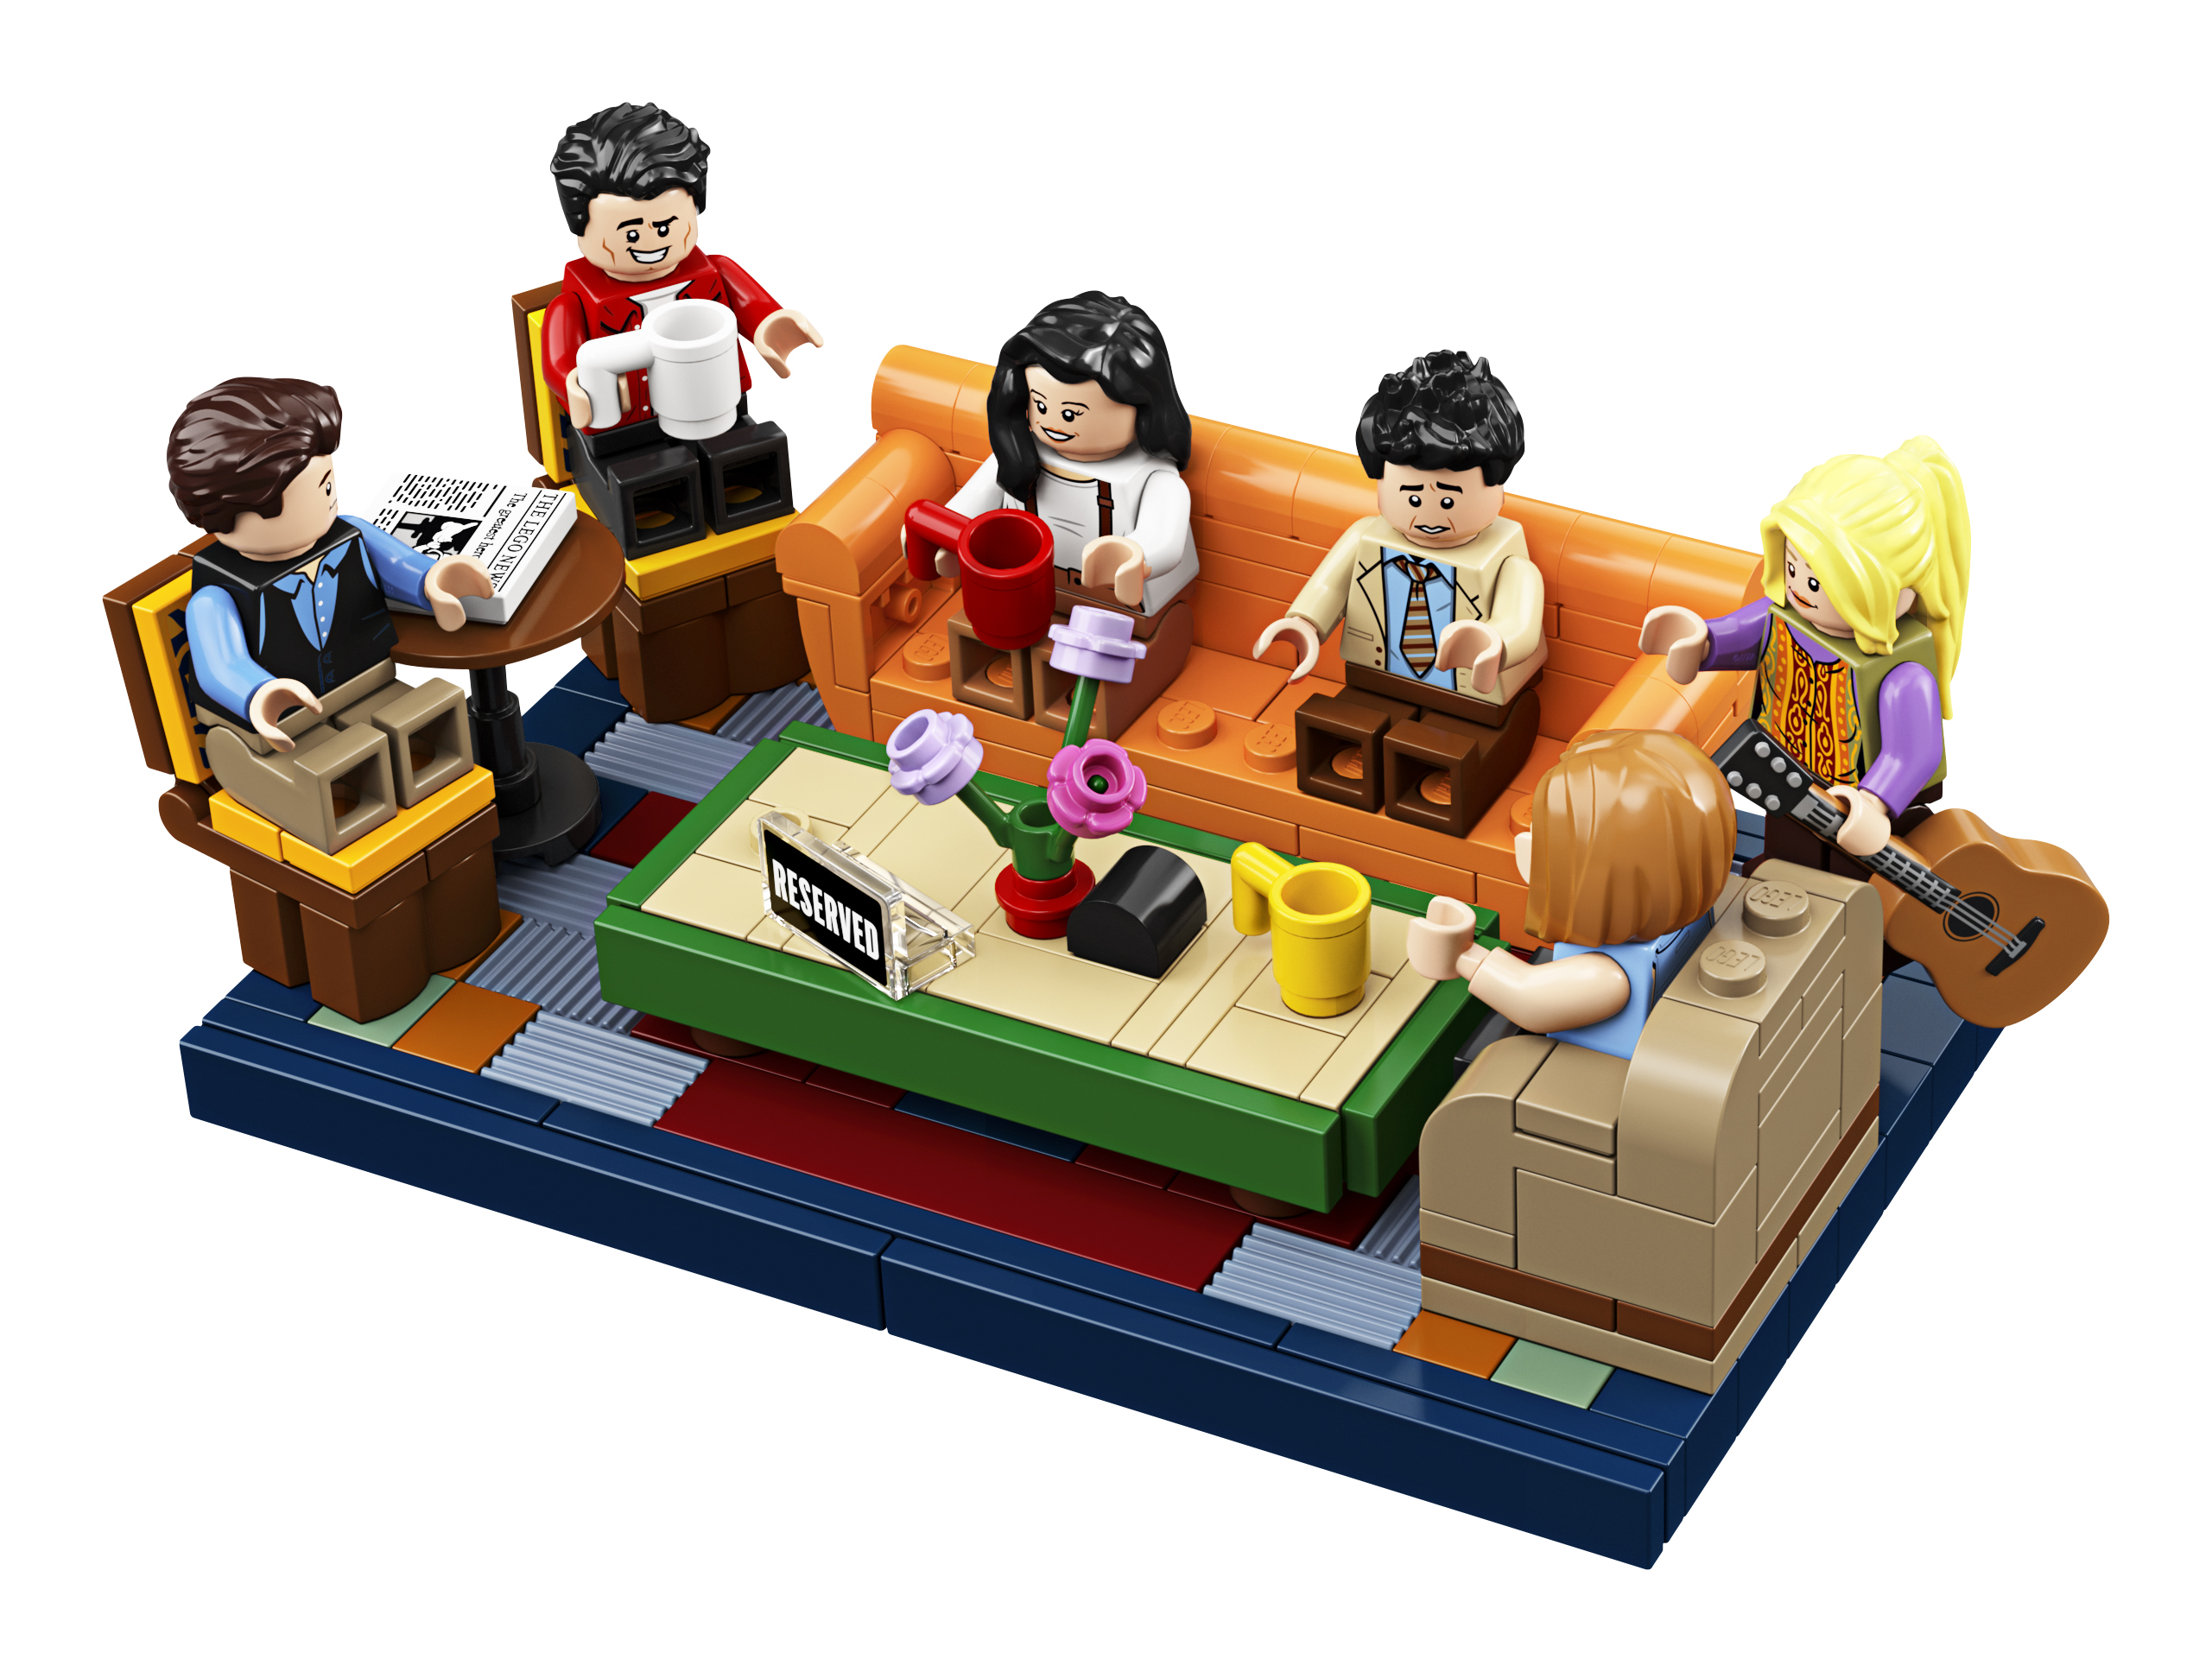 Vise dig Skråstreg udkast 21319 Friends Central Perk LEGO set officially unveiled! - Jay's Brick Blog